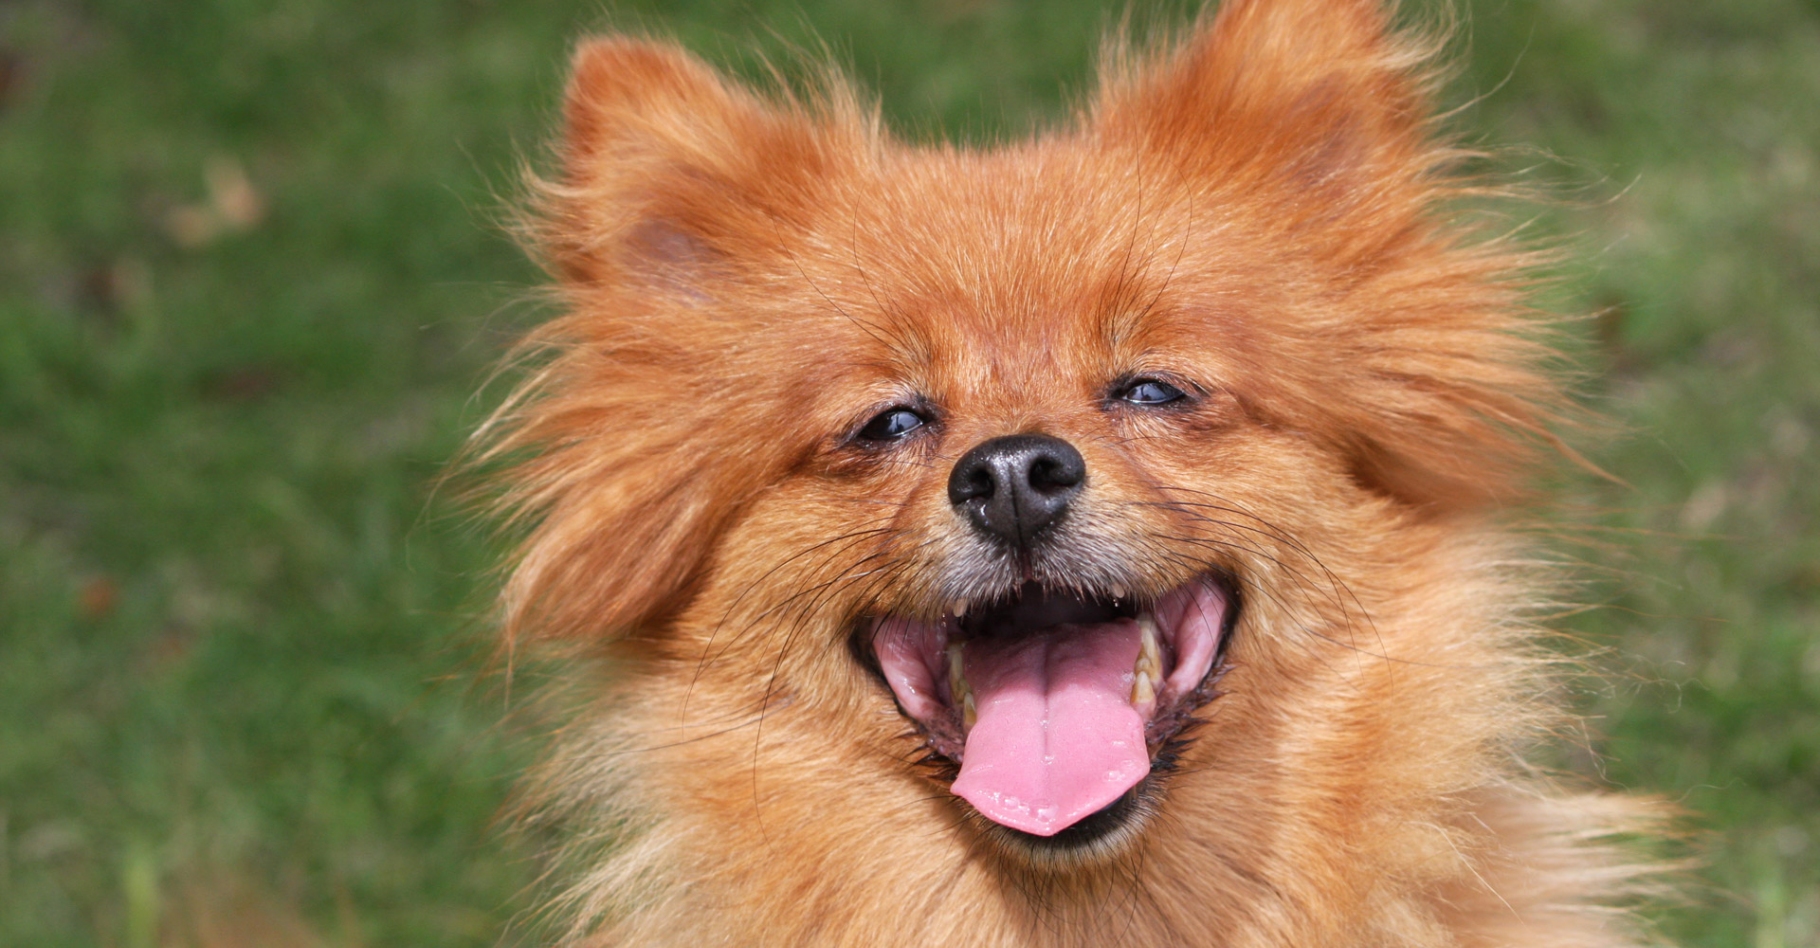 Une partie des spécialistes pensent que tous les mammifères pourraient être dotés du sens de l’humour. Les chiens riraient dans certaines occasions. © Karen Arnold, domaine public